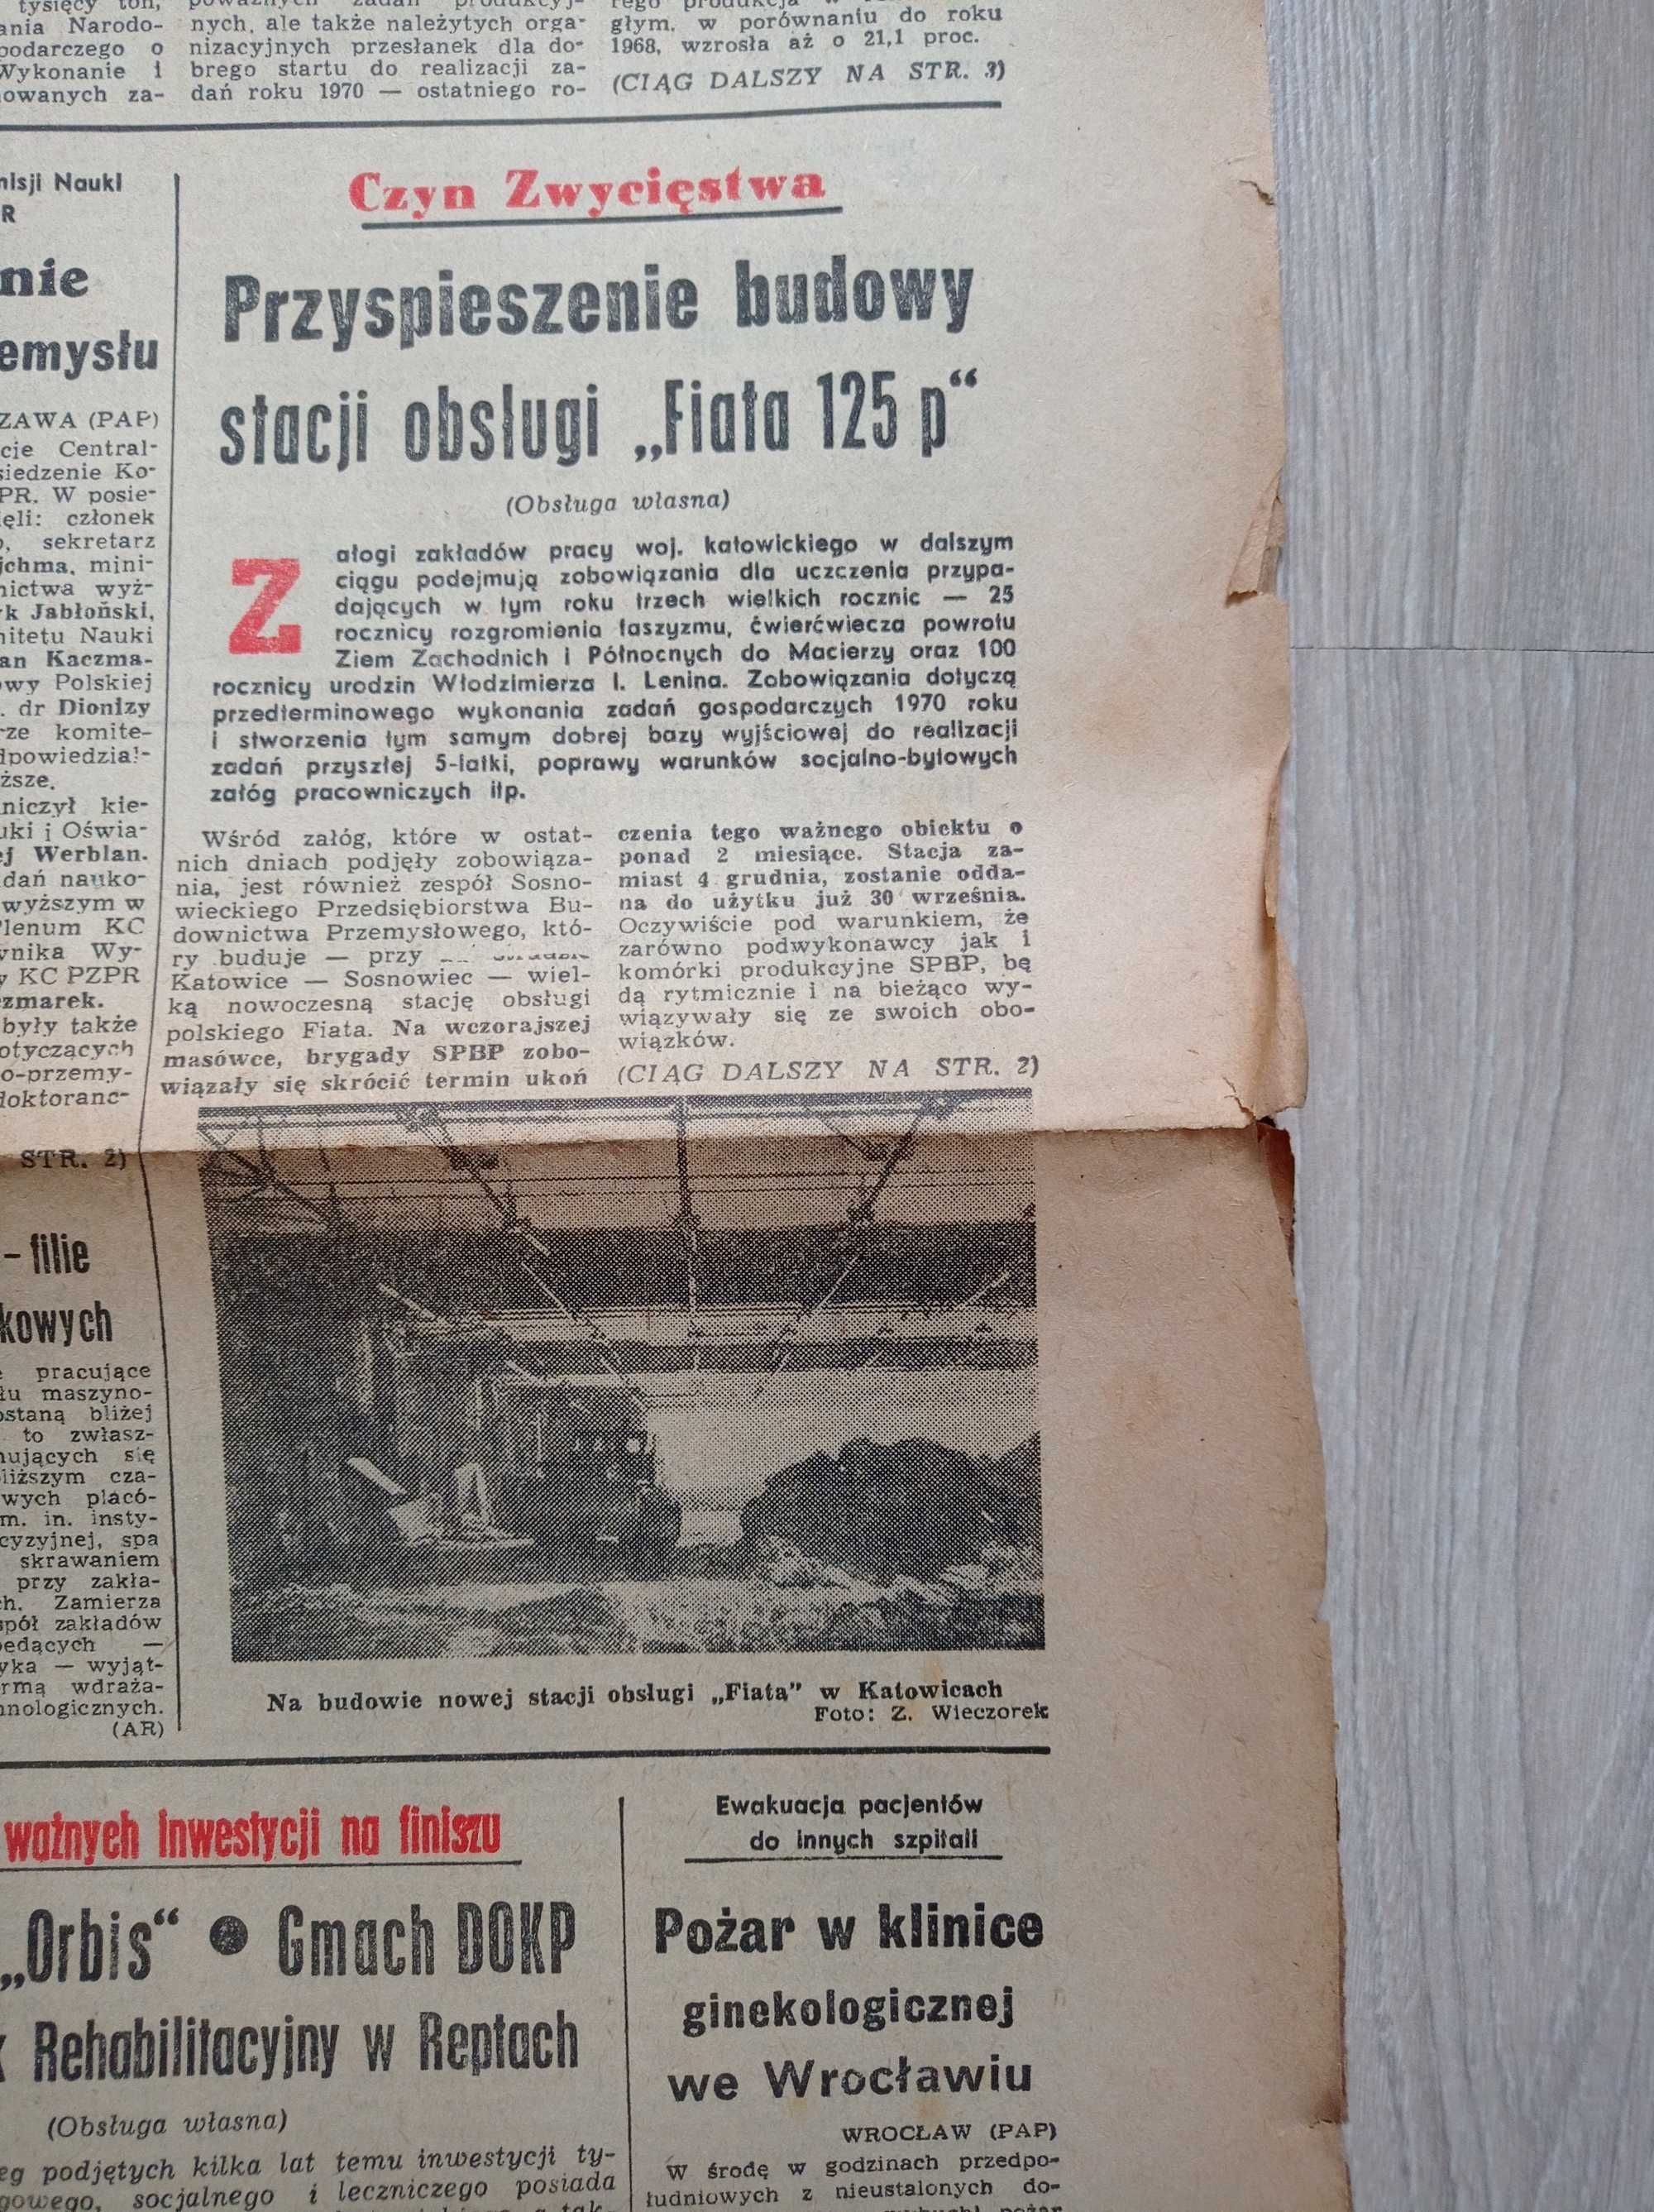 Trybuna robotnicza 54 / 1970